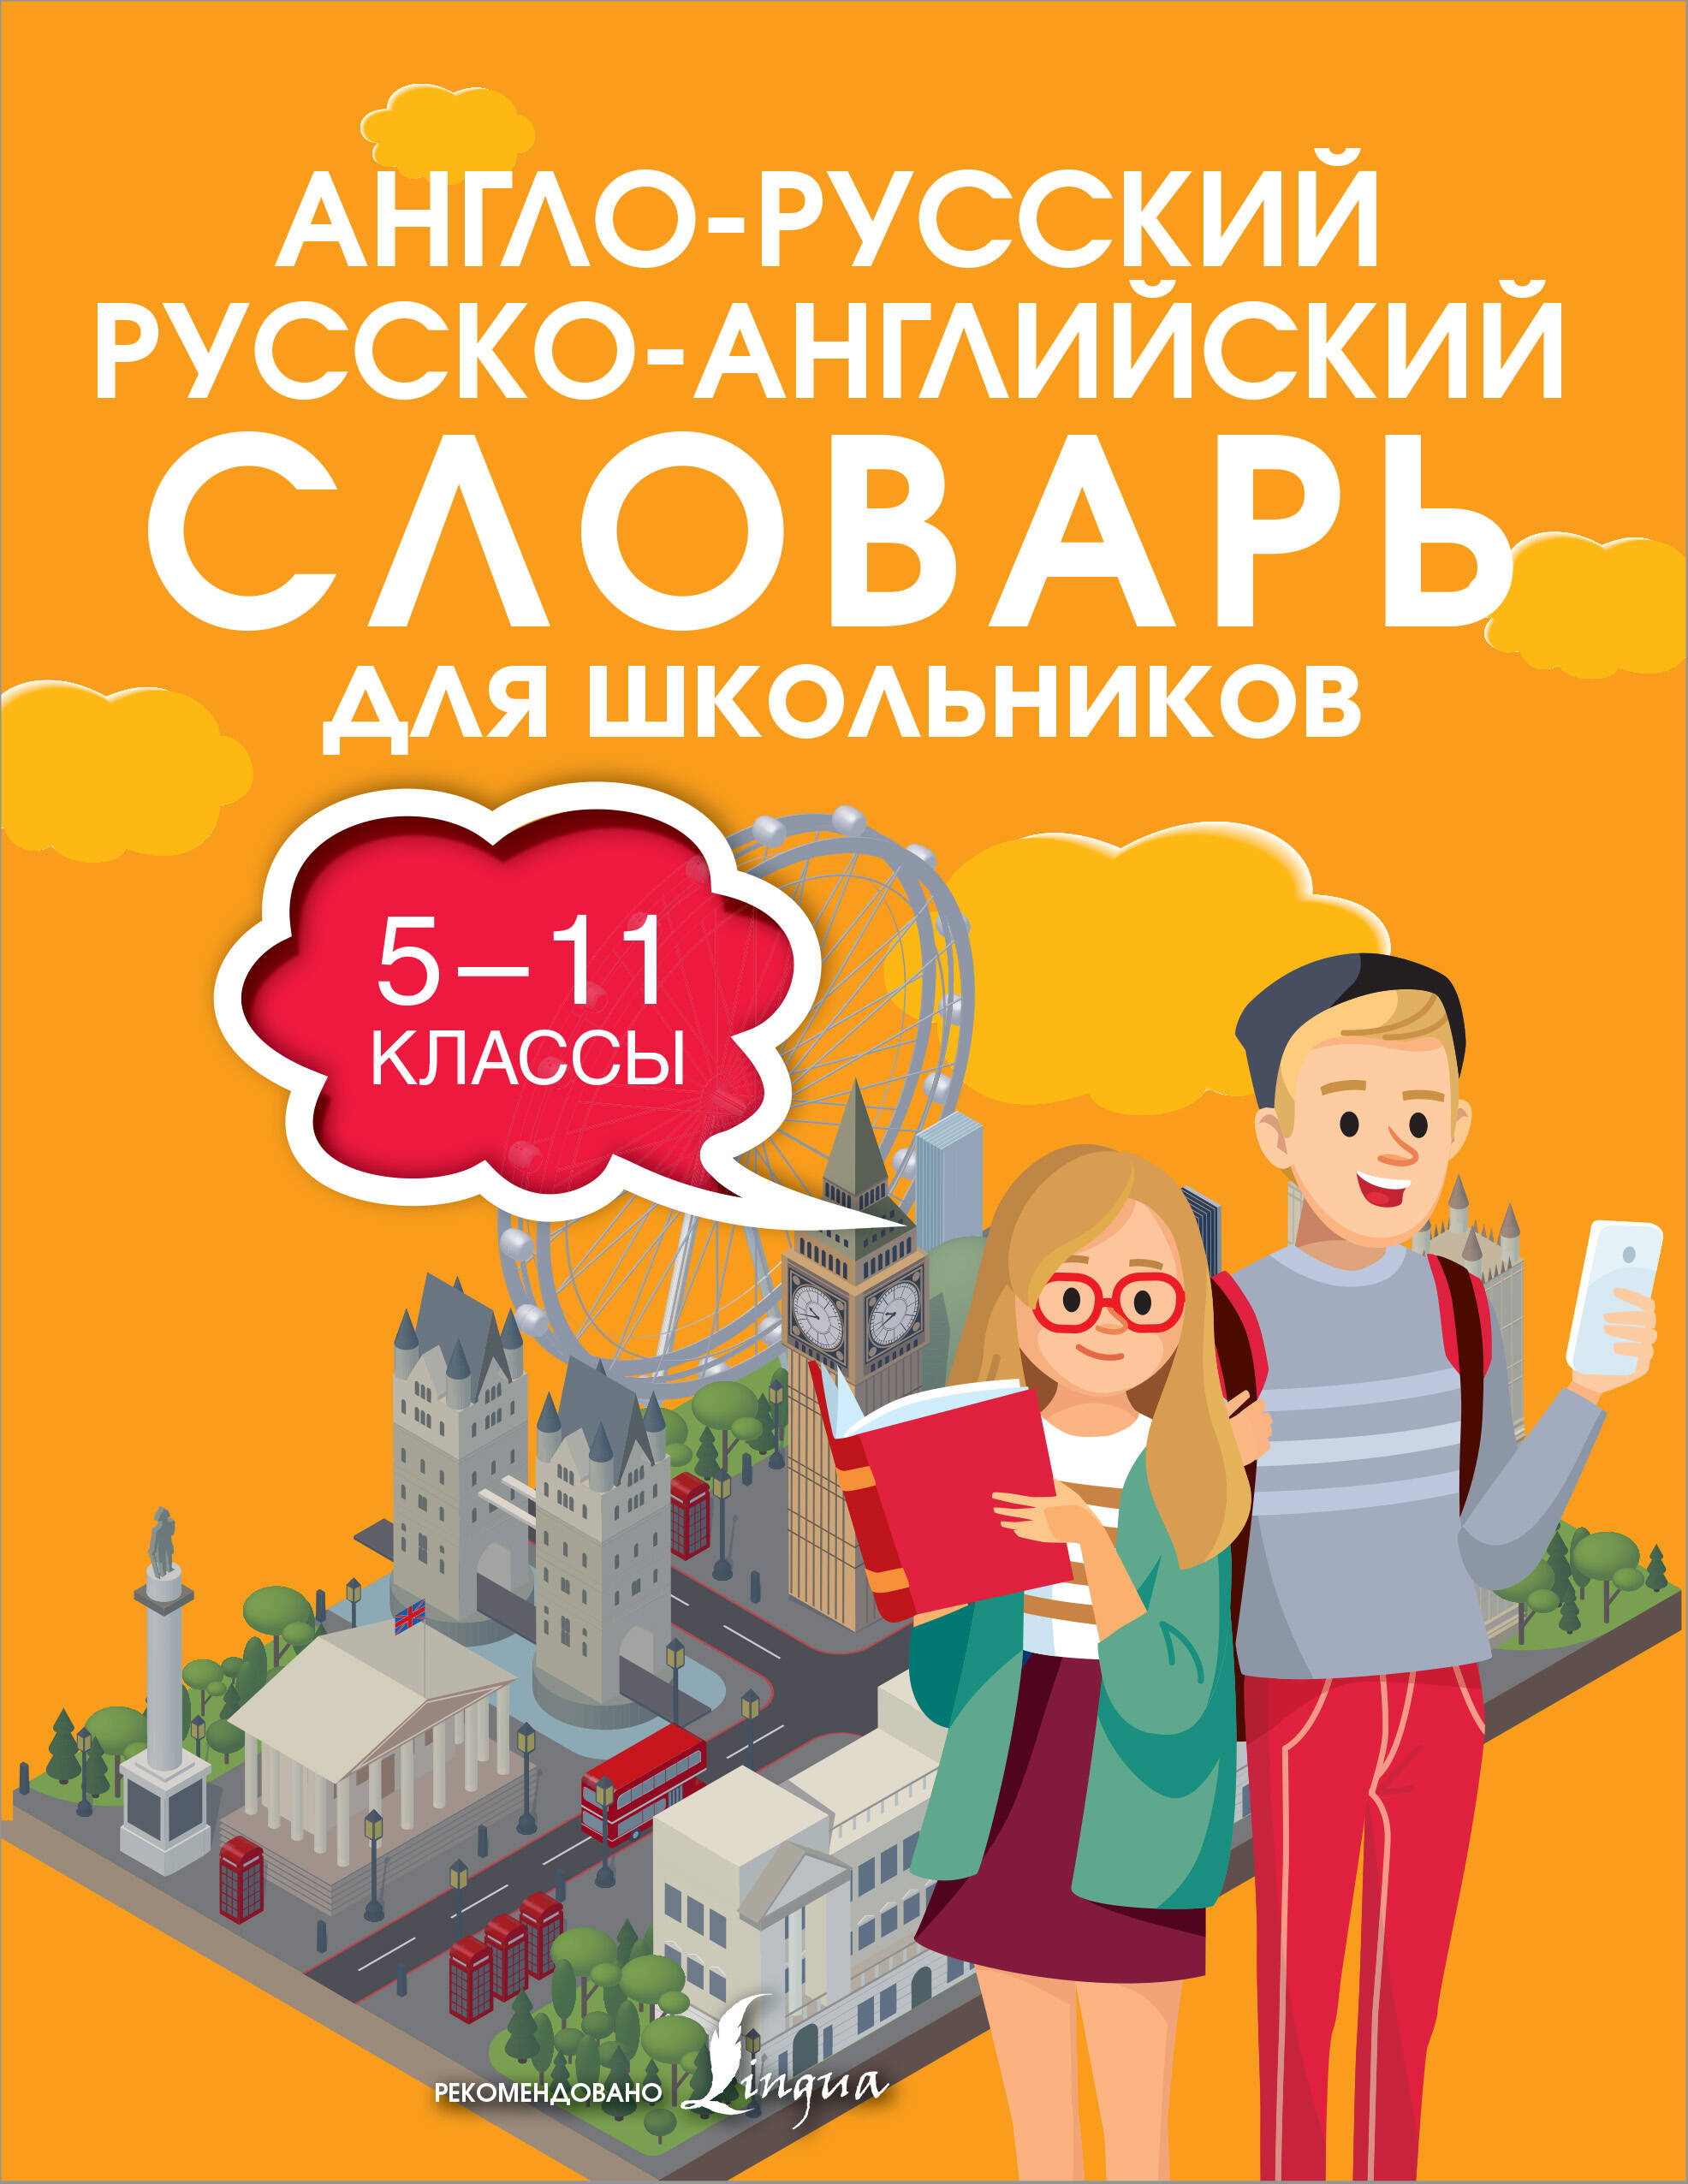  Англо-русский русско-английский словарь для школьников 5-11 классы - страница 0